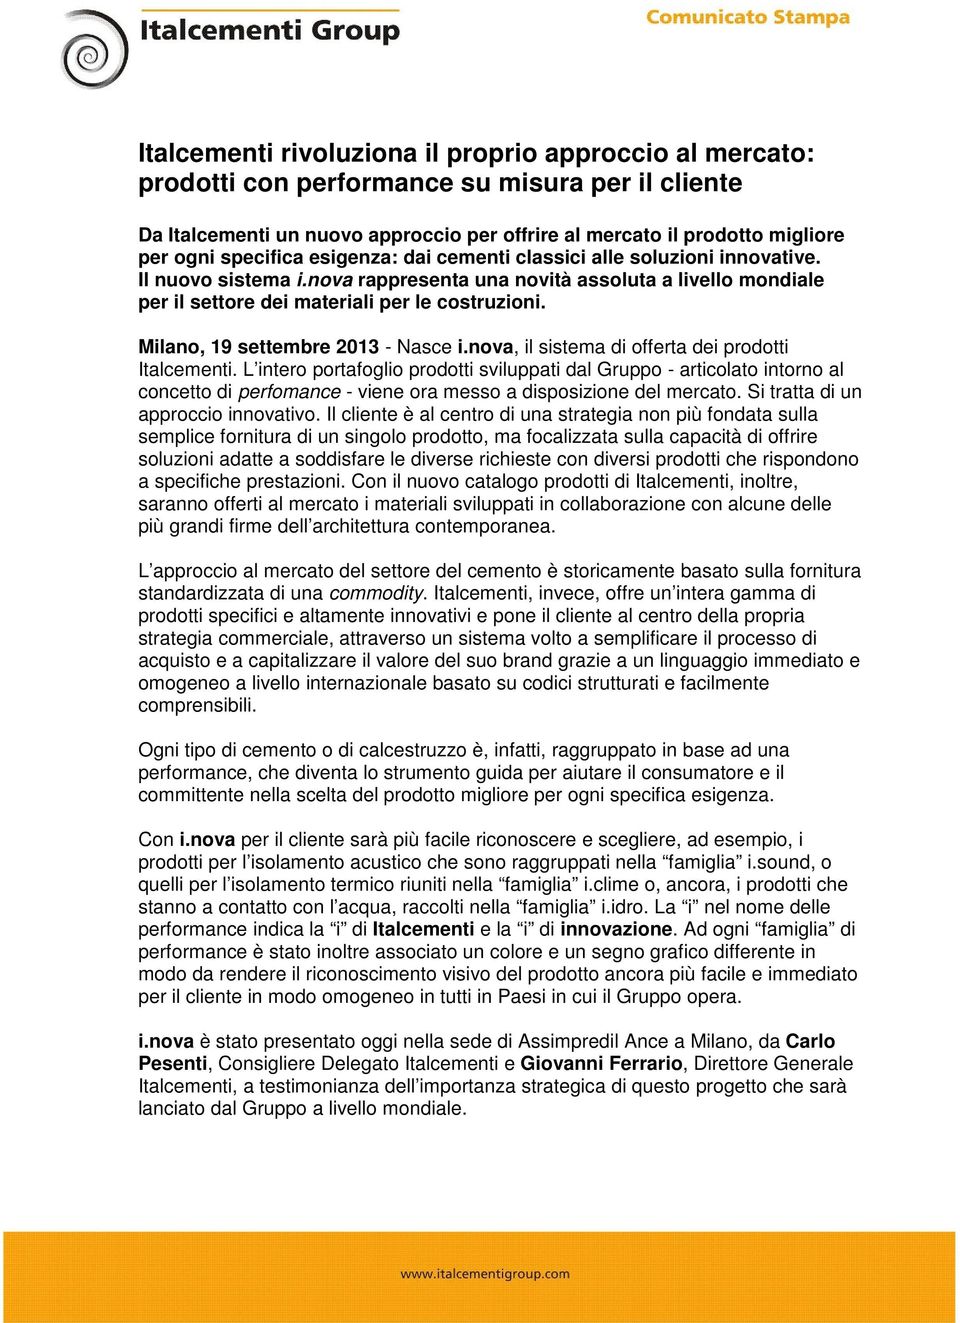 Milano, 19 settembre 2013 - Nasce i.nova, il sistema di offerta dei prodotti Italcementi.